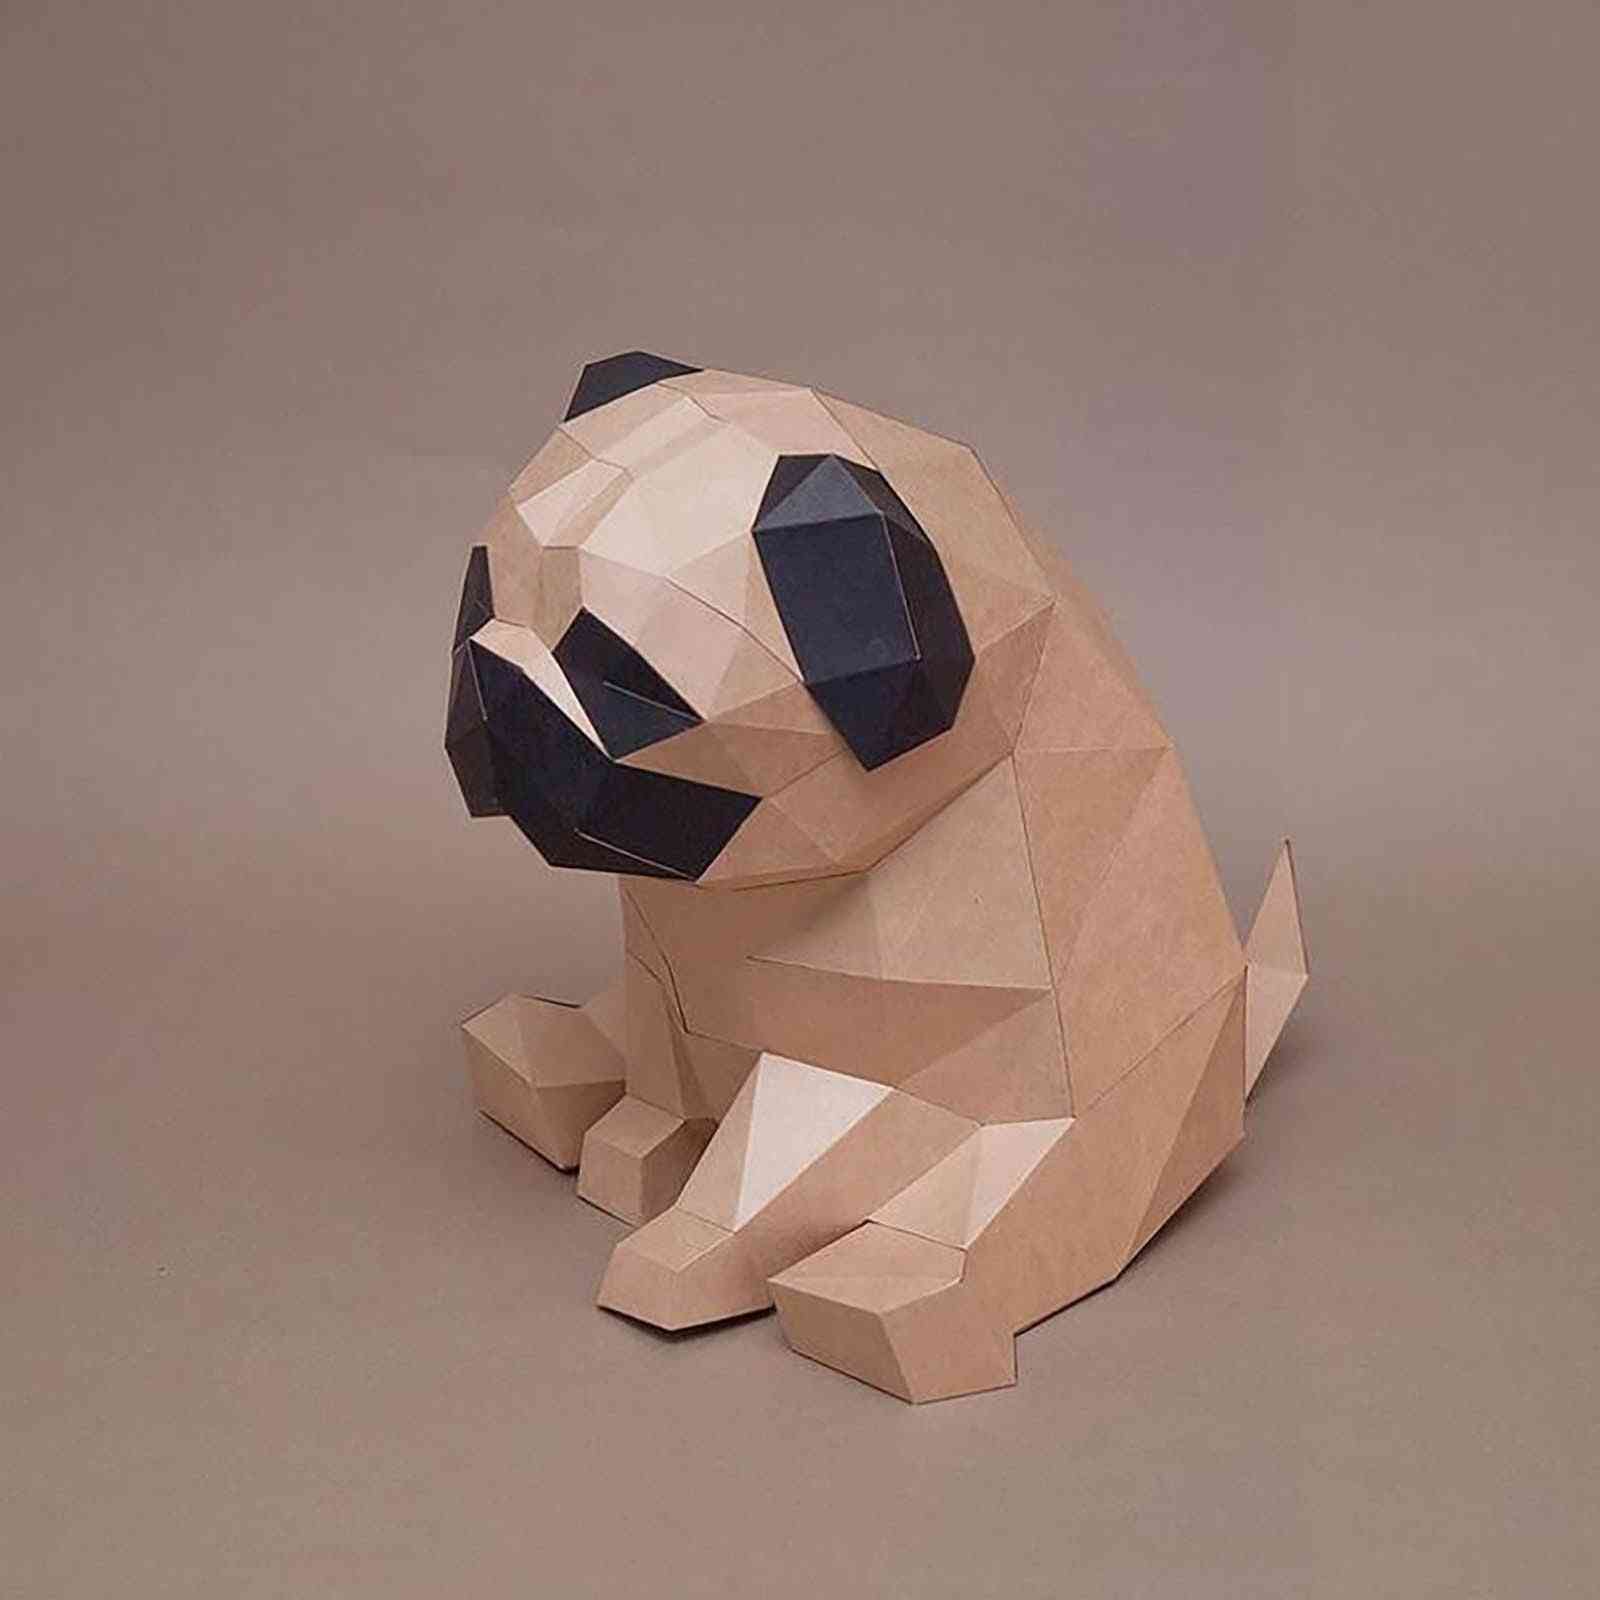 Modello 3D: animali creativi con la carta, decorazione della parete di casa, puzzle